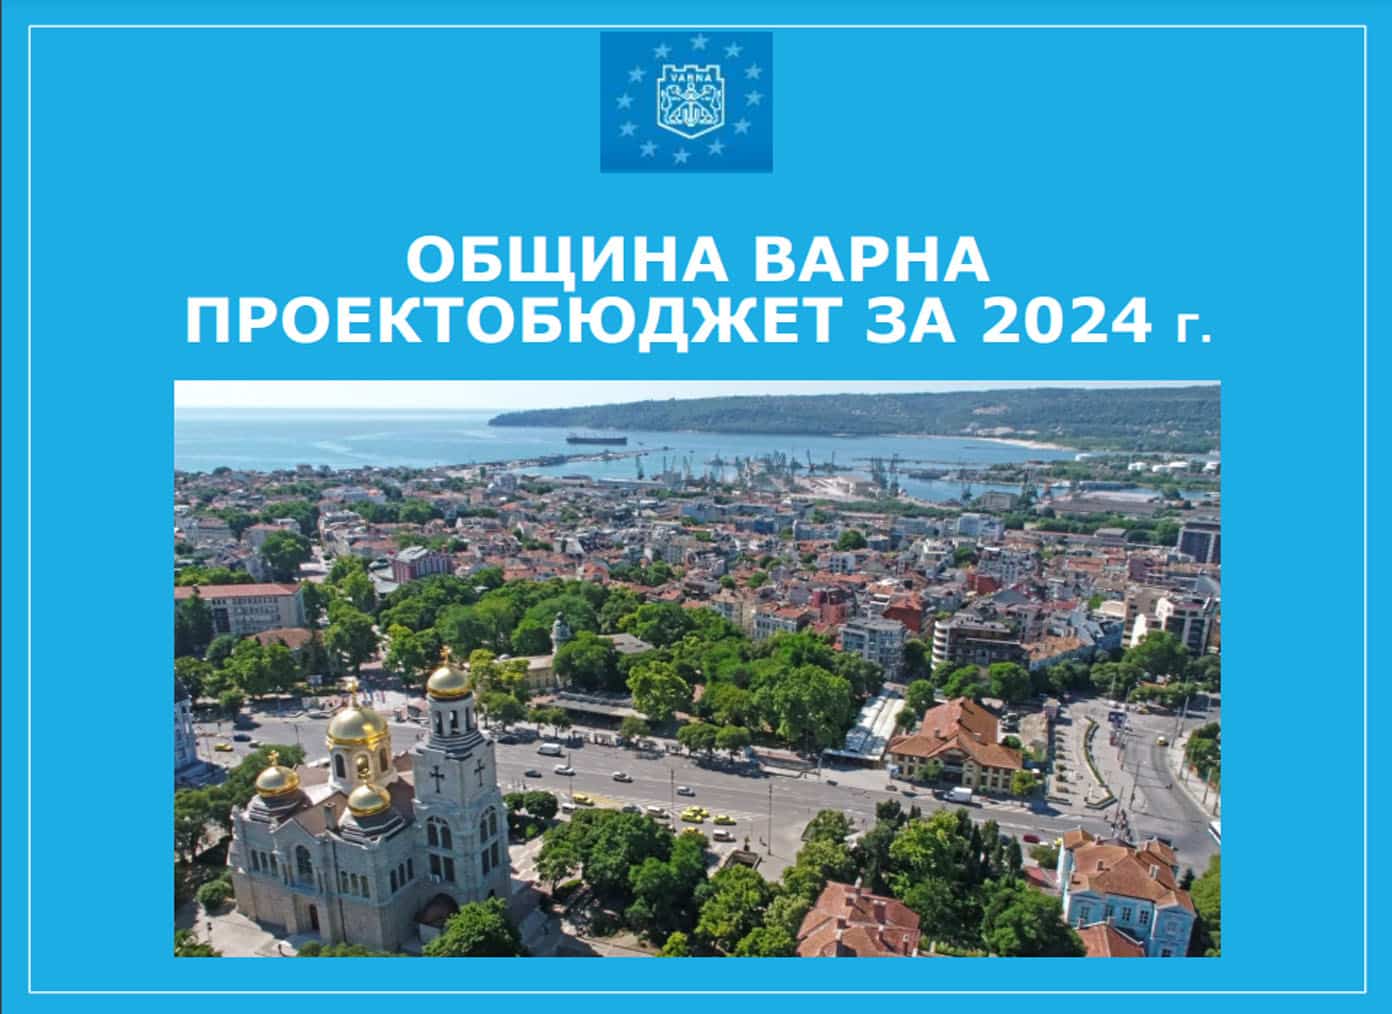 Община Варна публикува проектобюджета за 2024 година съобщиха от местната